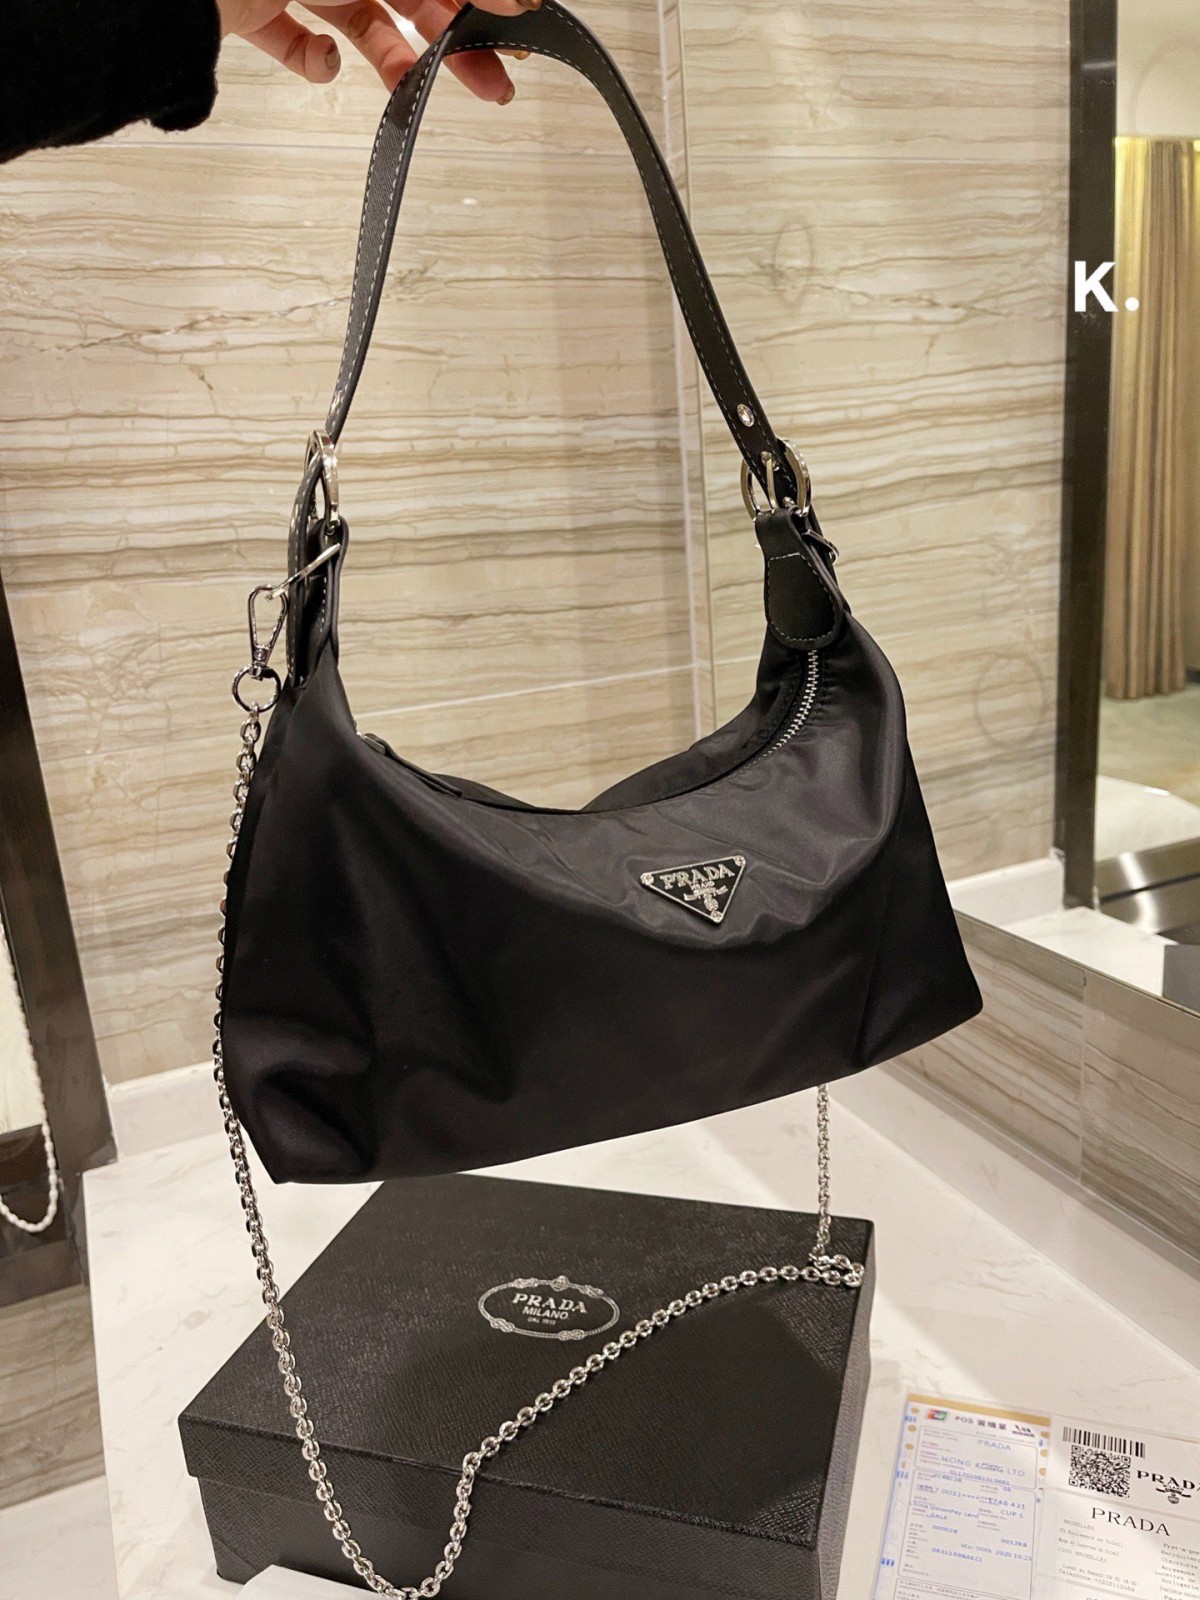 Pamusoro 7 Prada inonyanya kufarirwa replica mabhegi gidhi (2022 update)-Best Quality Fake Louis Vuitton Bag Online Store, Replica mugadziri bag ru